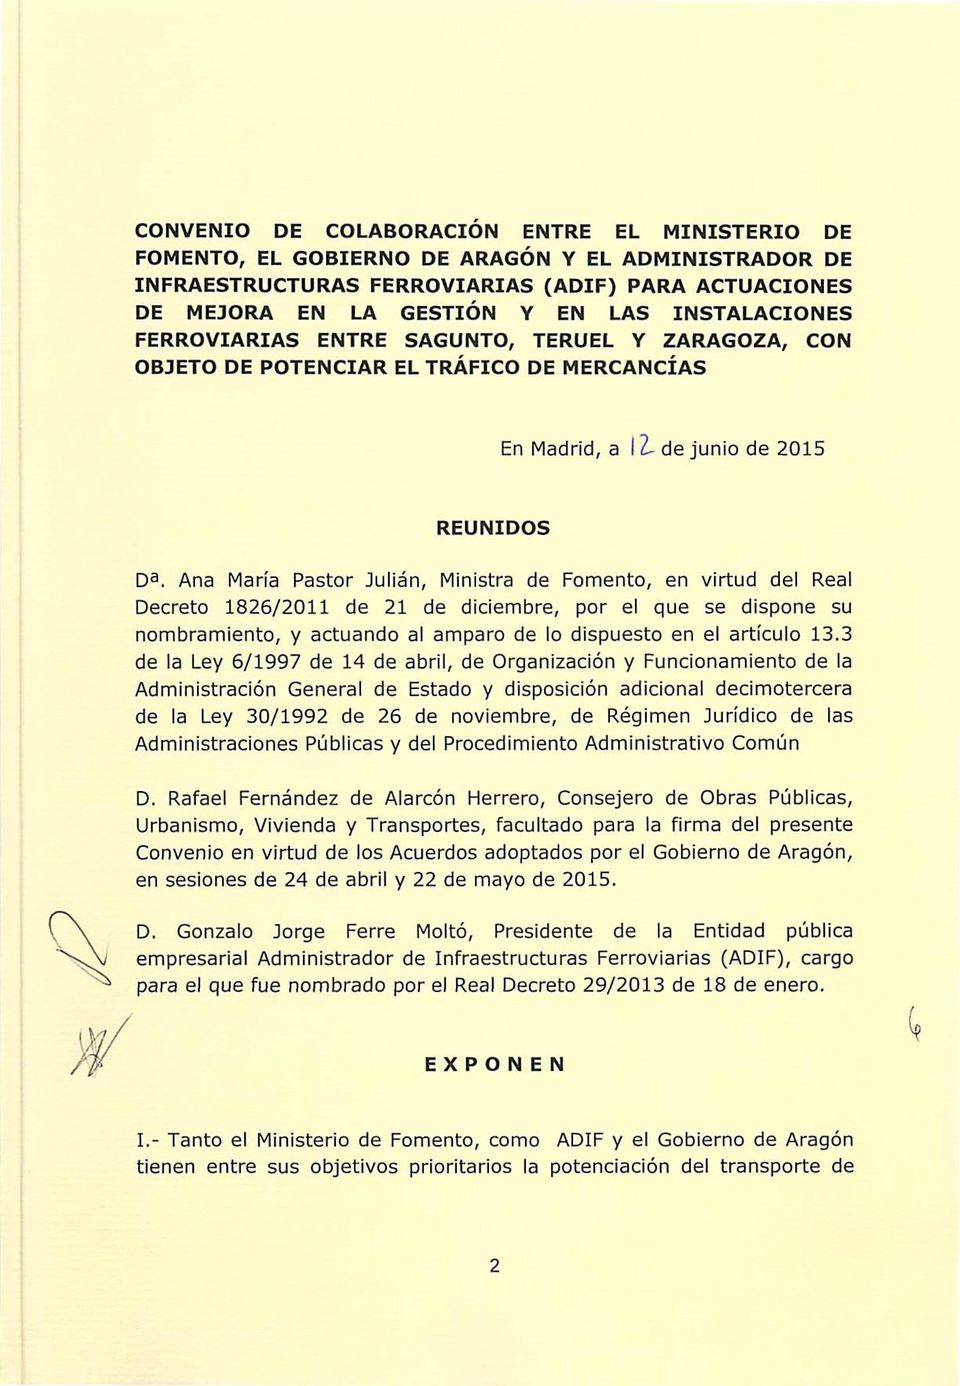 Ana María Pastor Julián, Ministra de Fomento, en virtud del Real Decreto 1826/2011 de 21 de diciembre, por el que se dispone su nombramiento, y actuando al amparo de lo dispuesto en el artículo 13.